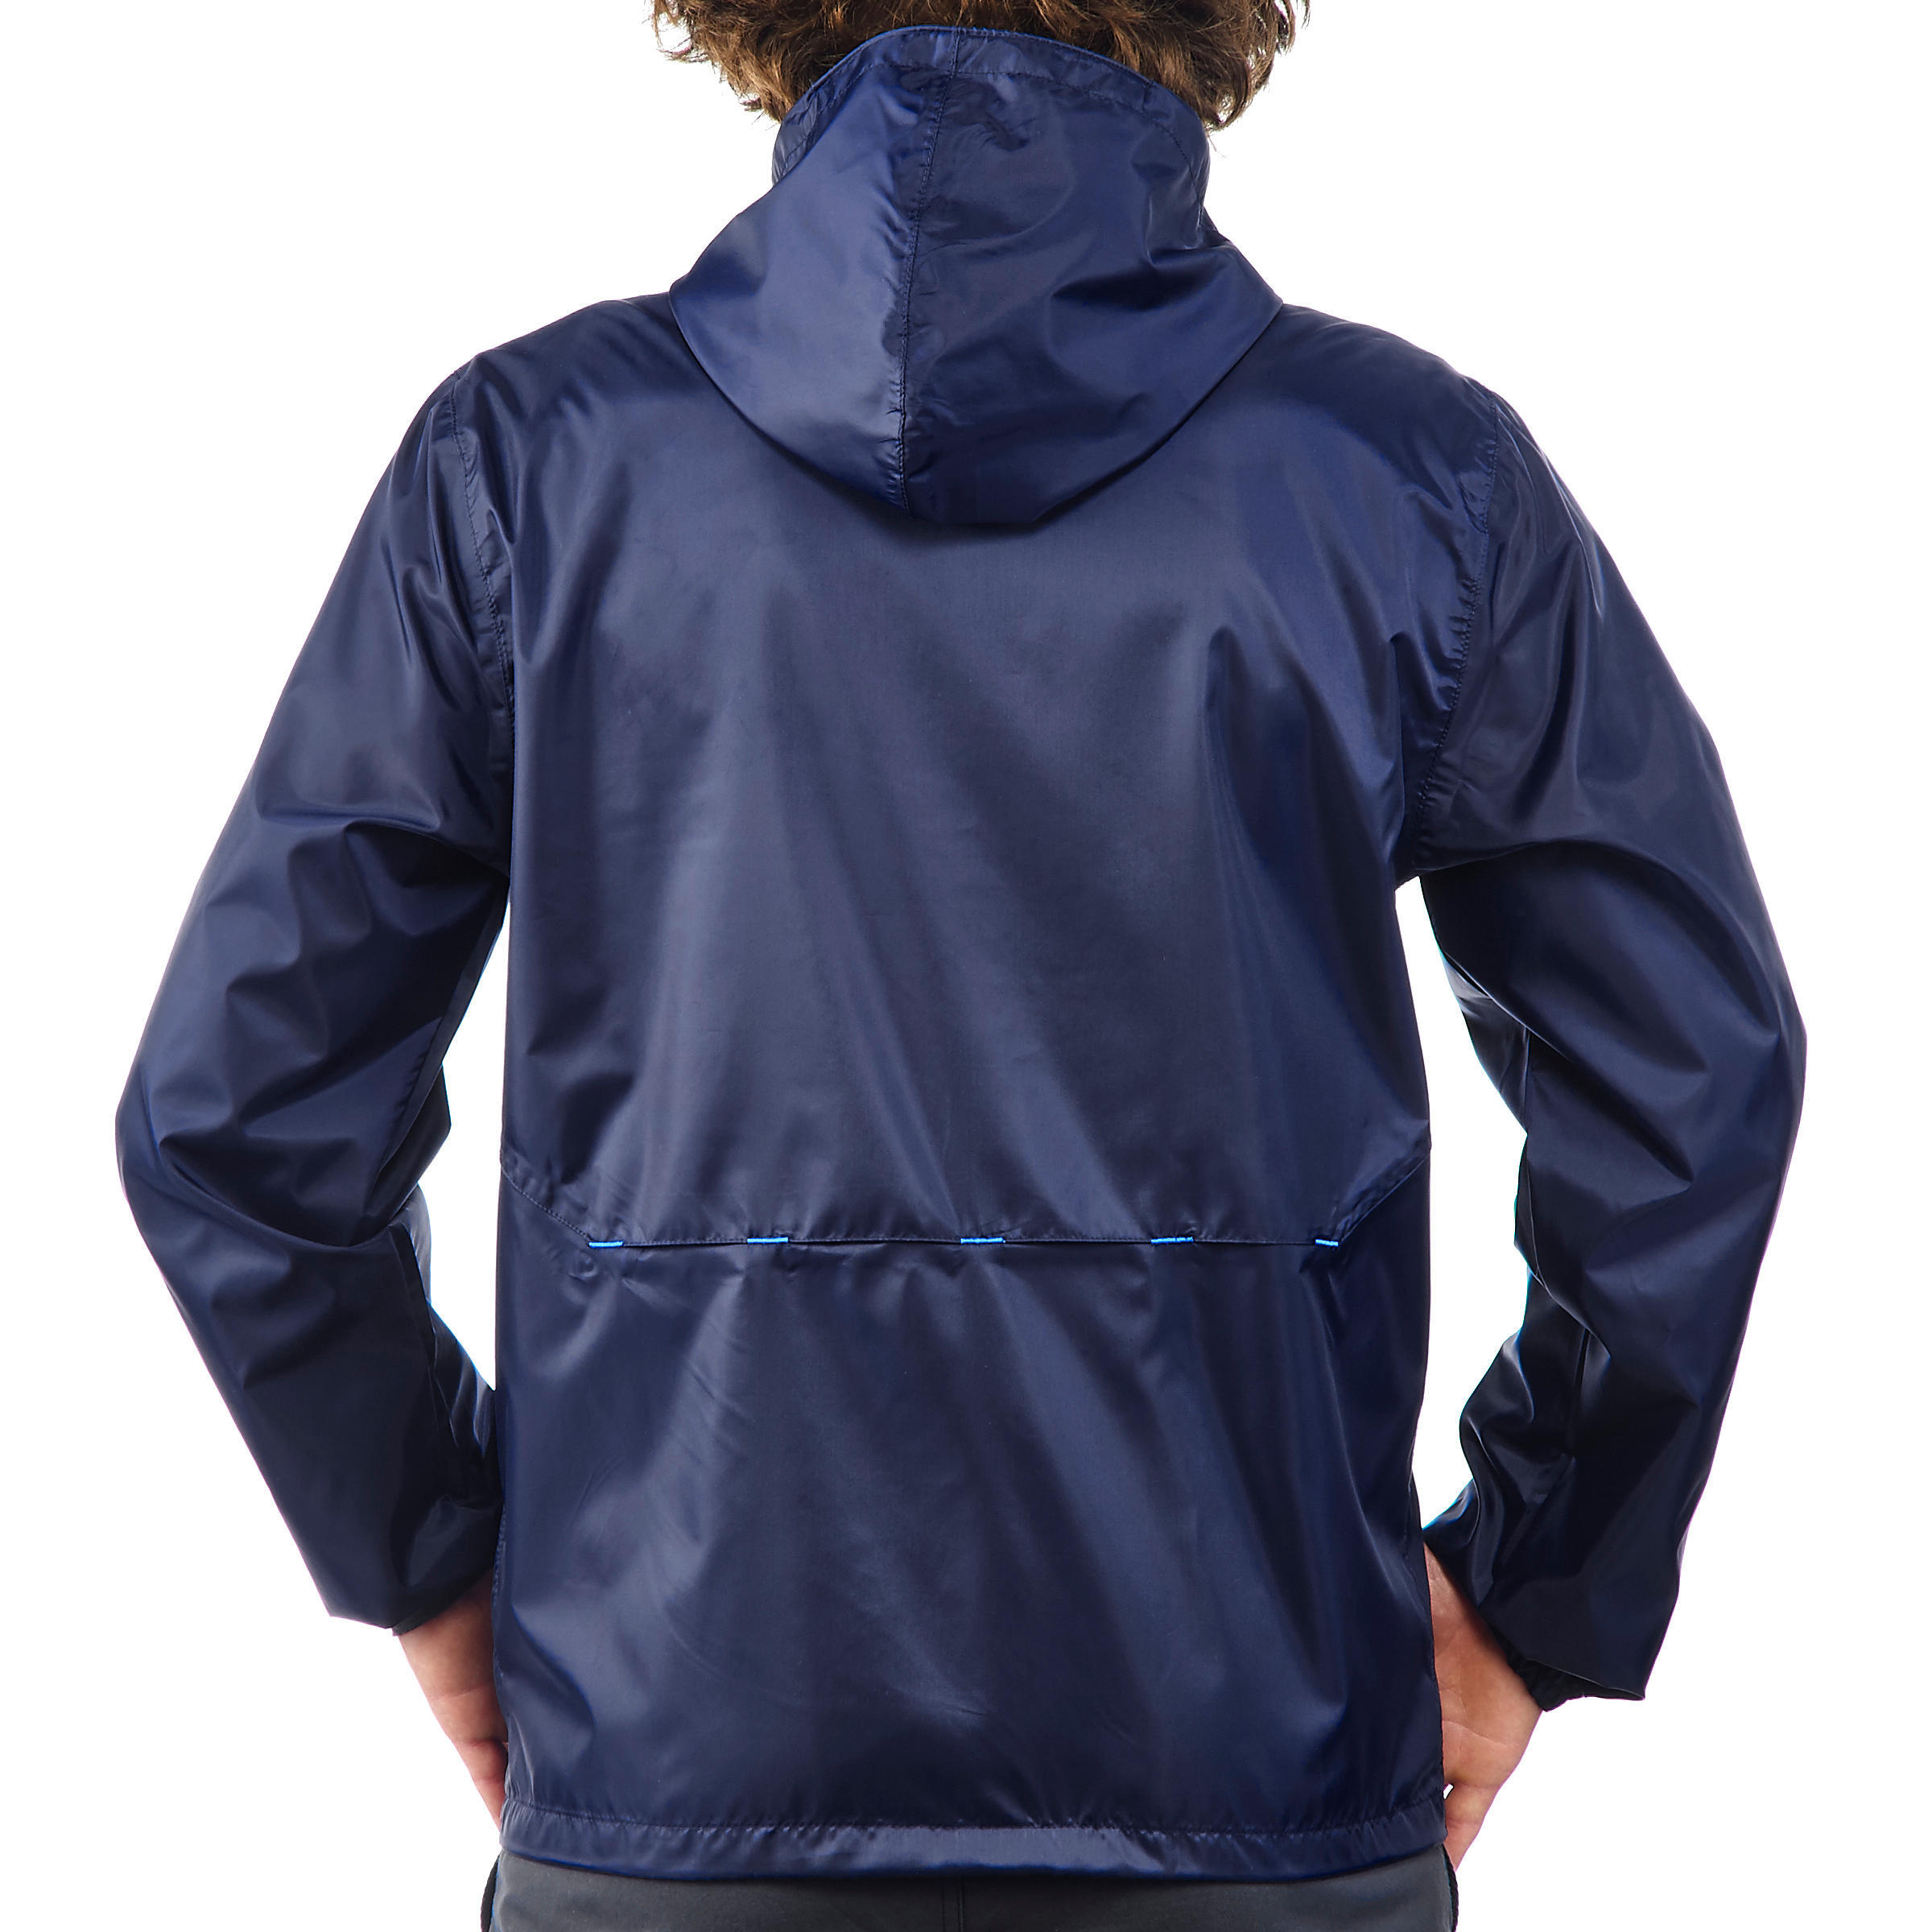 Men's Windproof and Water-repellent Hiking Jacket - Raincut Full Zip 5/13